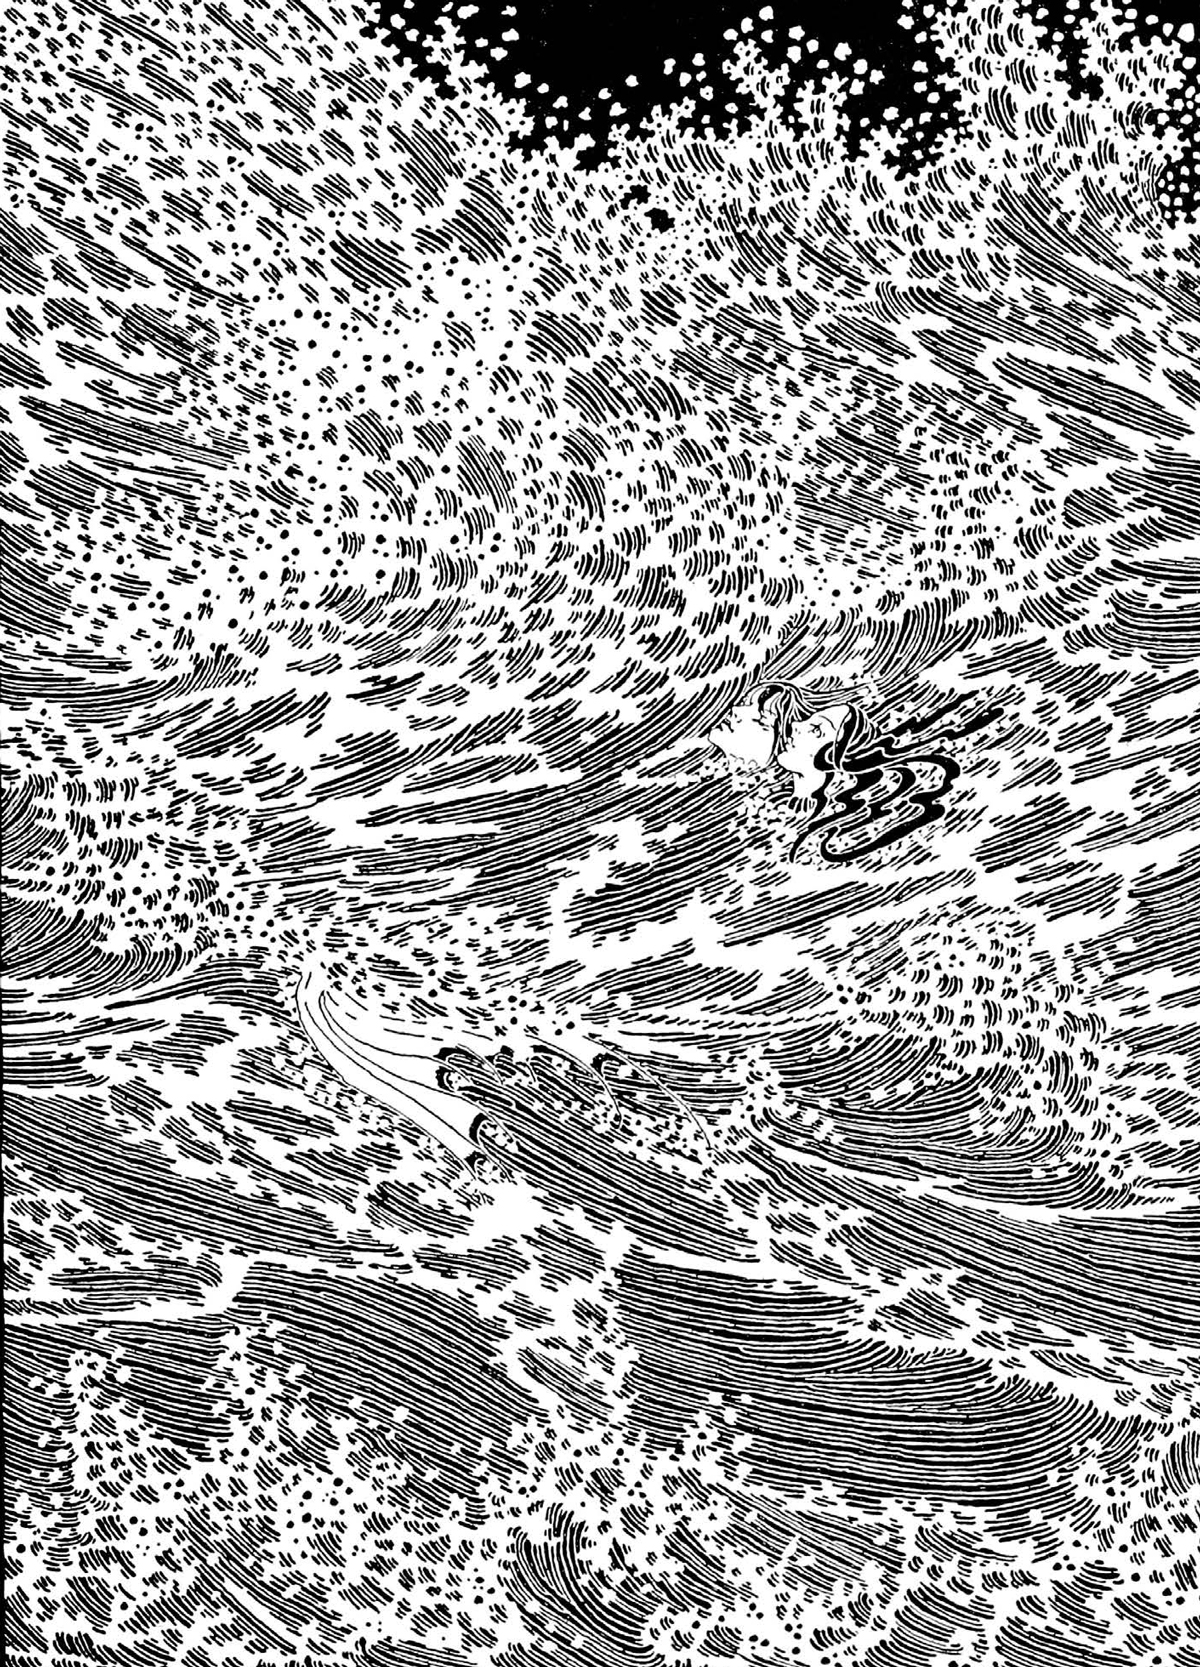 The Little Mermaid illustration by Dugald Stewart Walker